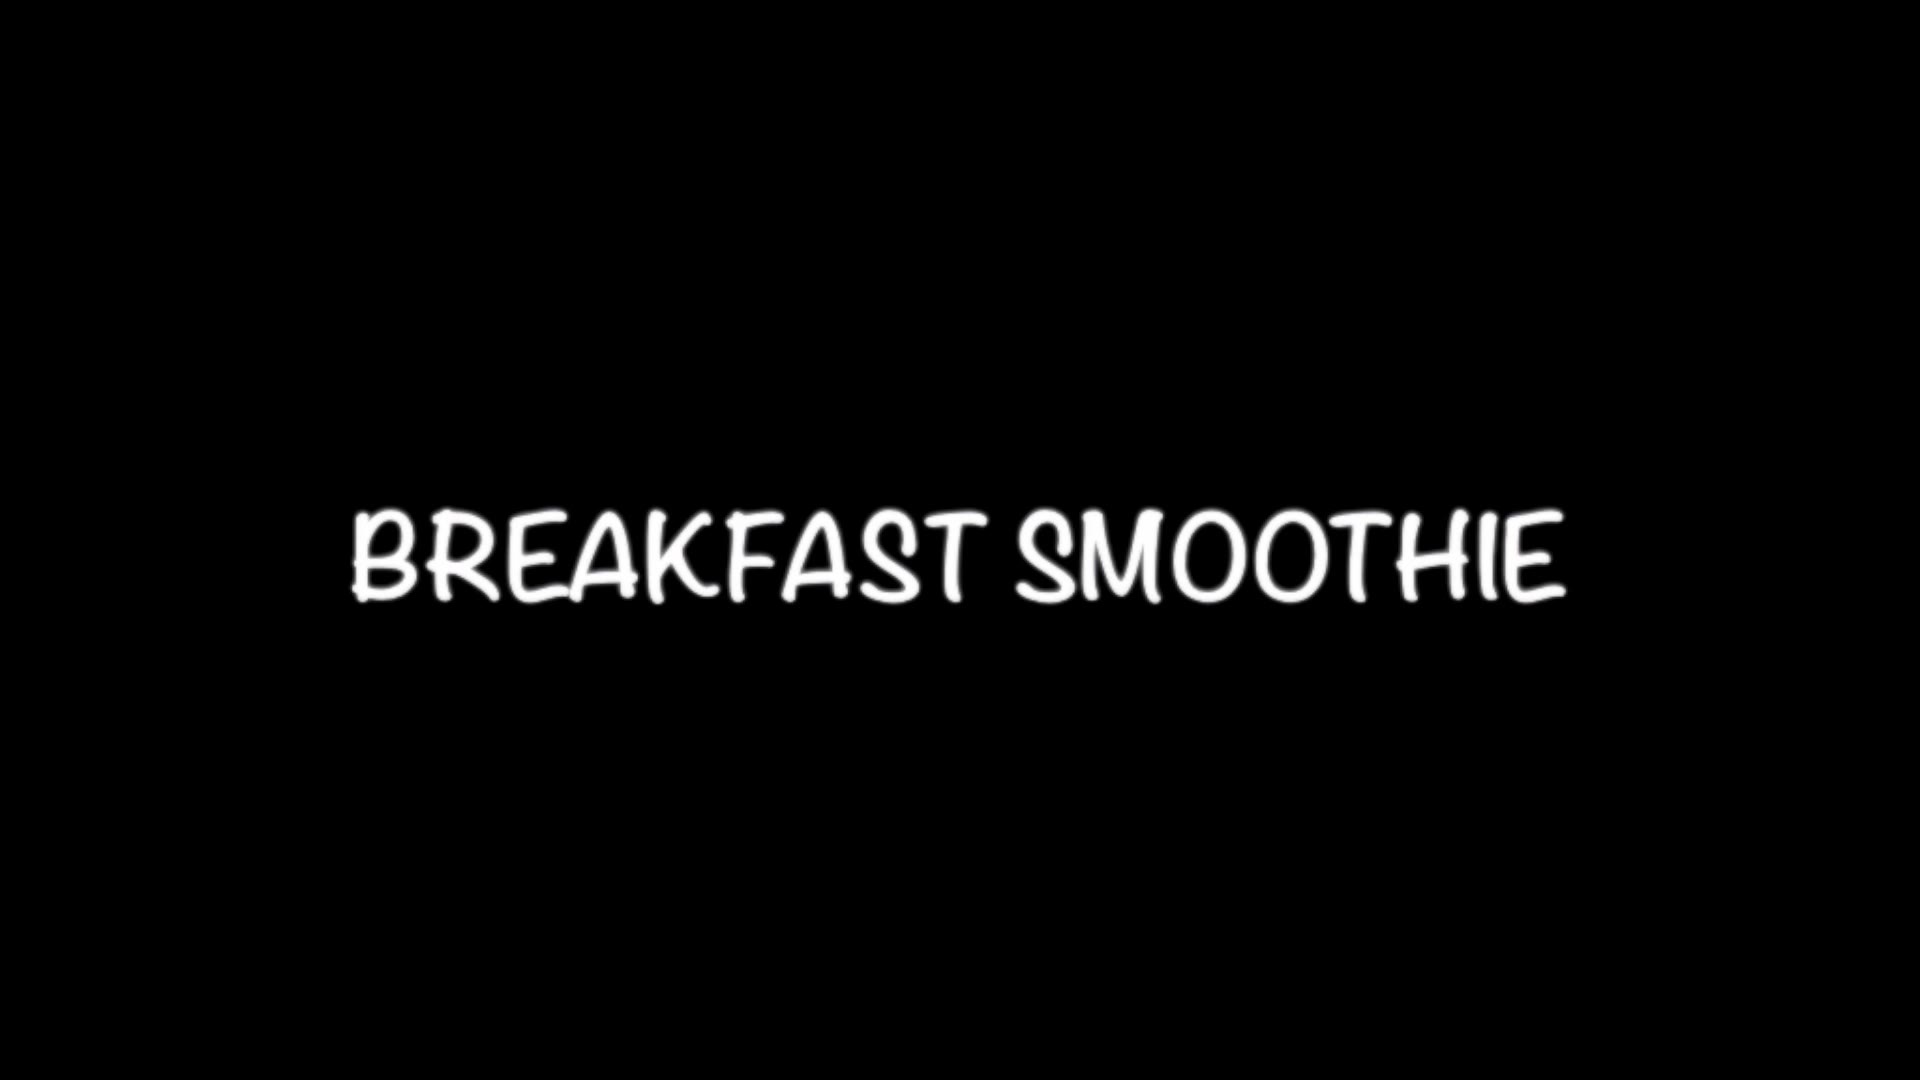  breakfast smoothie